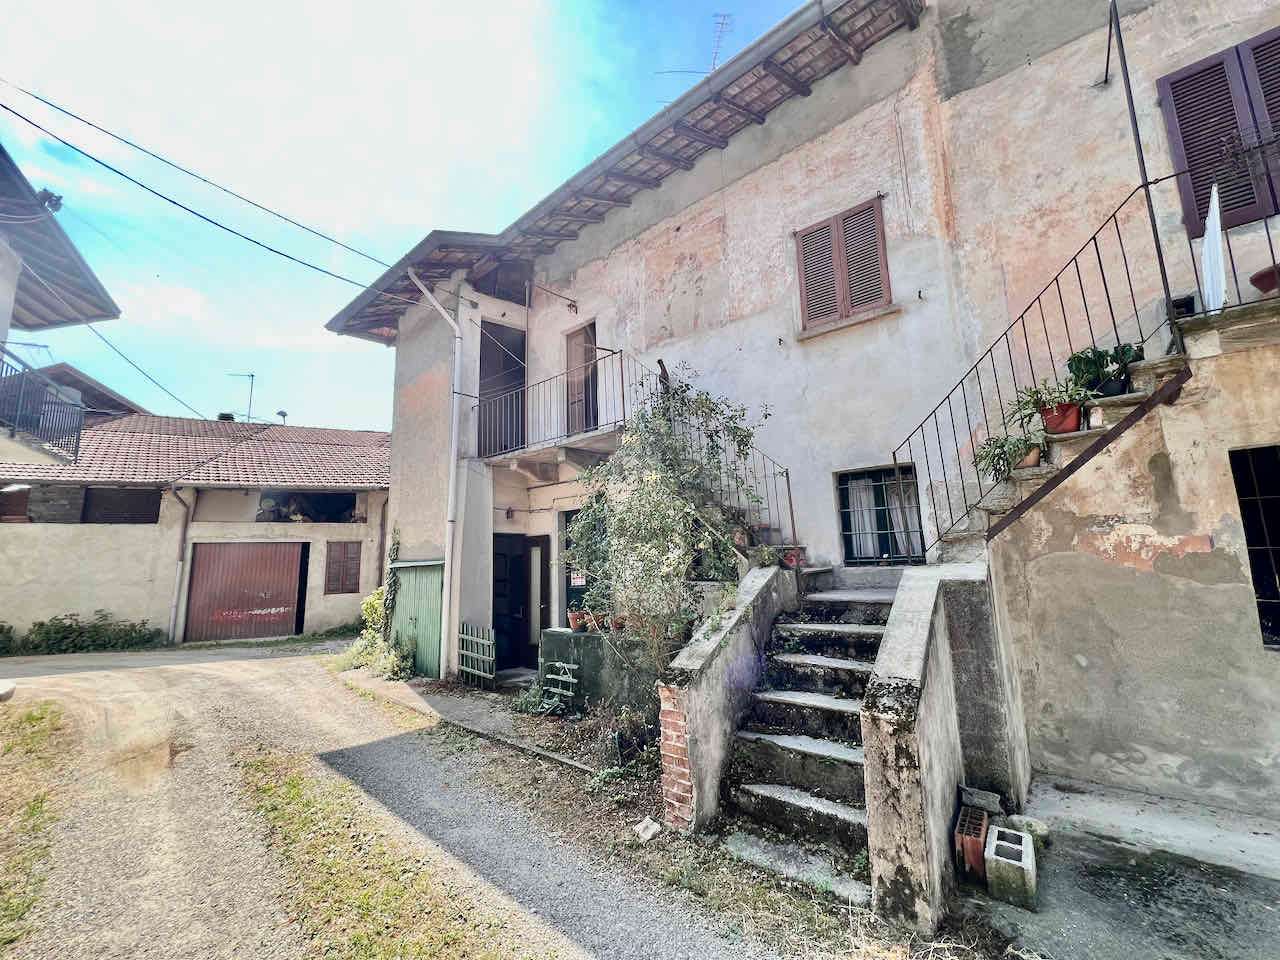 Rustico / Casale in vendita a Taino, 3 locali, prezzo € 25.000 | CambioCasa.it